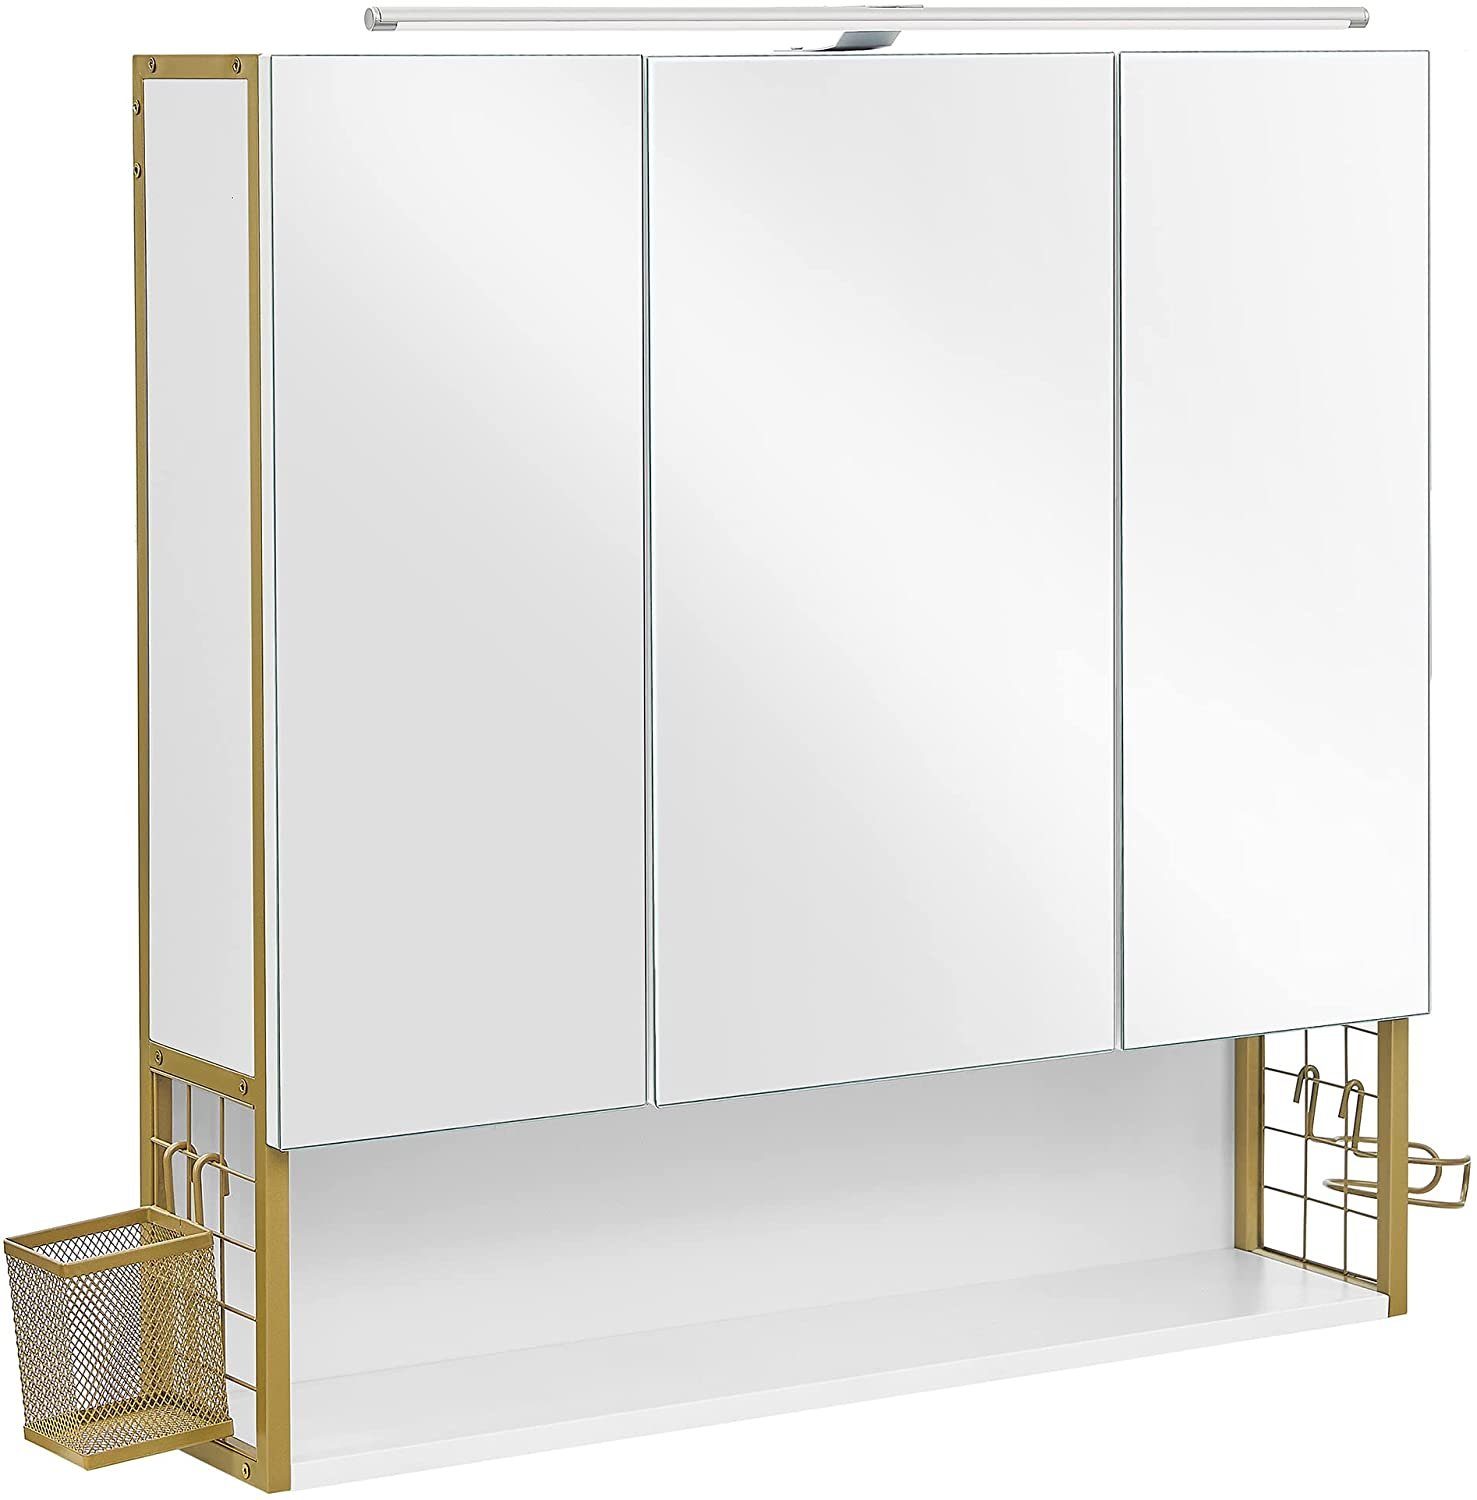 VASAGLE Spiegelschrank »Badezimmerschrank« mit Beleuchtung,  höhenverstellbare Regalebene, 70 x 14,5 x 70 cm